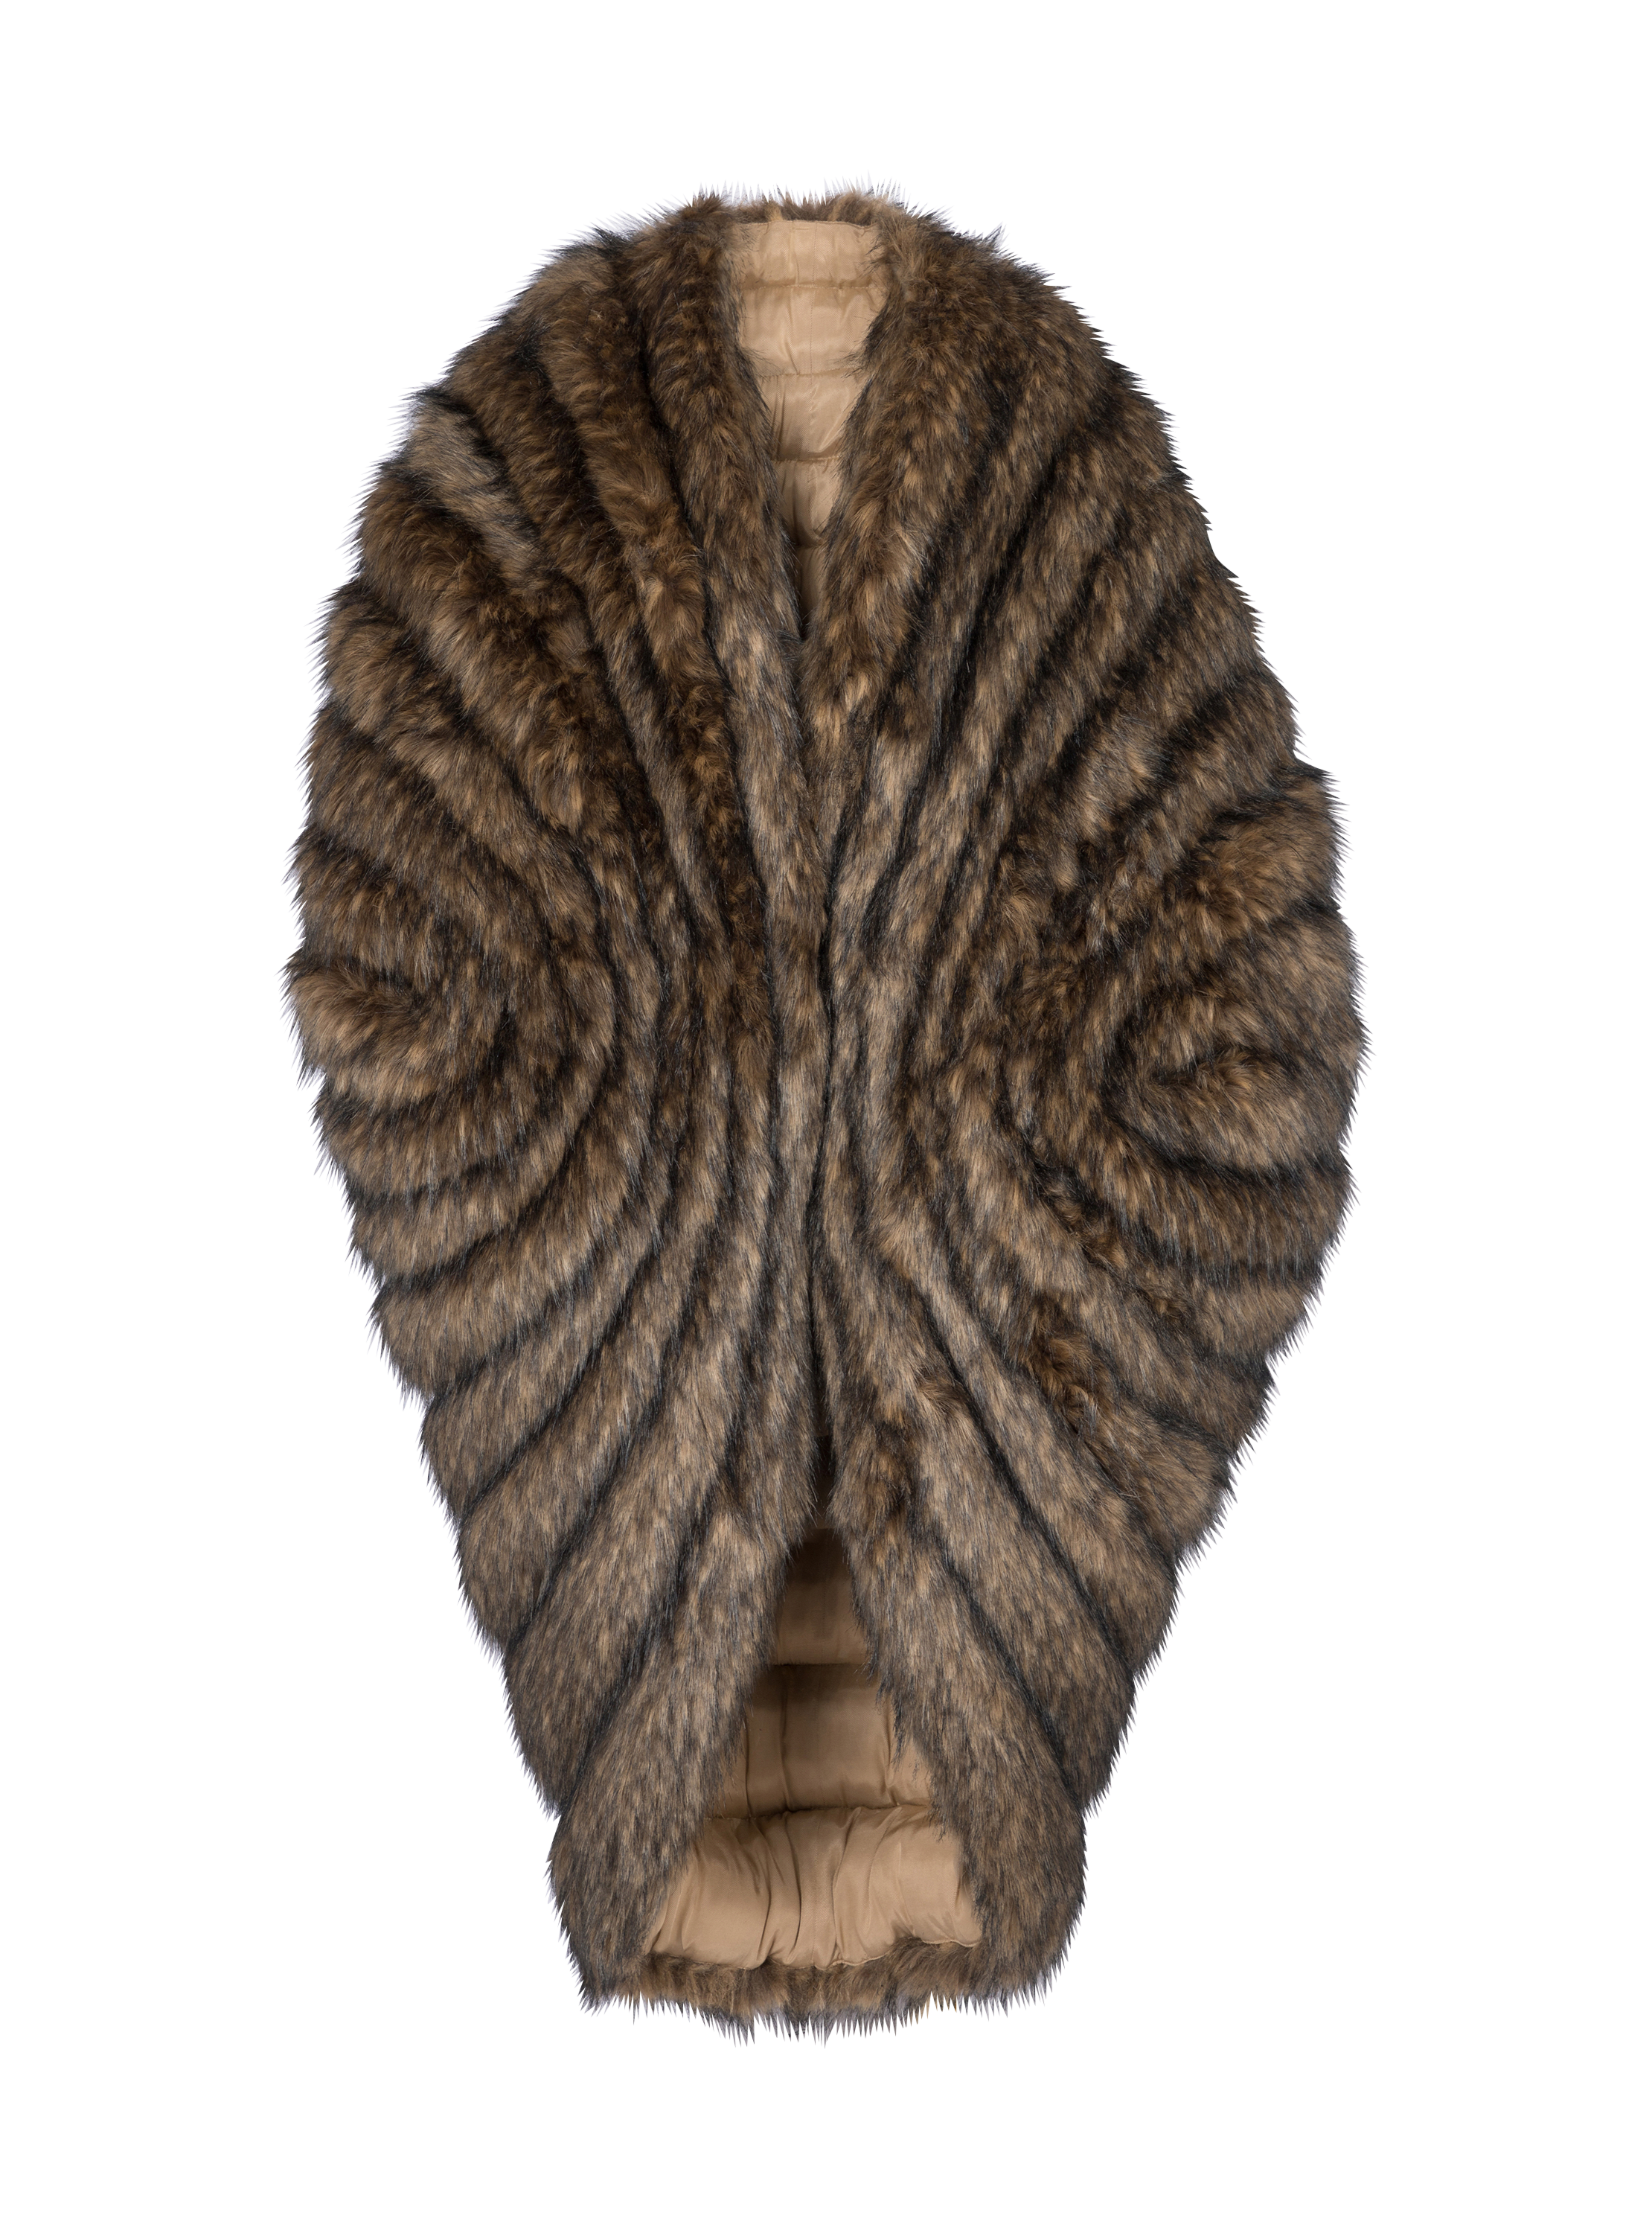 Cape fourrure marron poils long